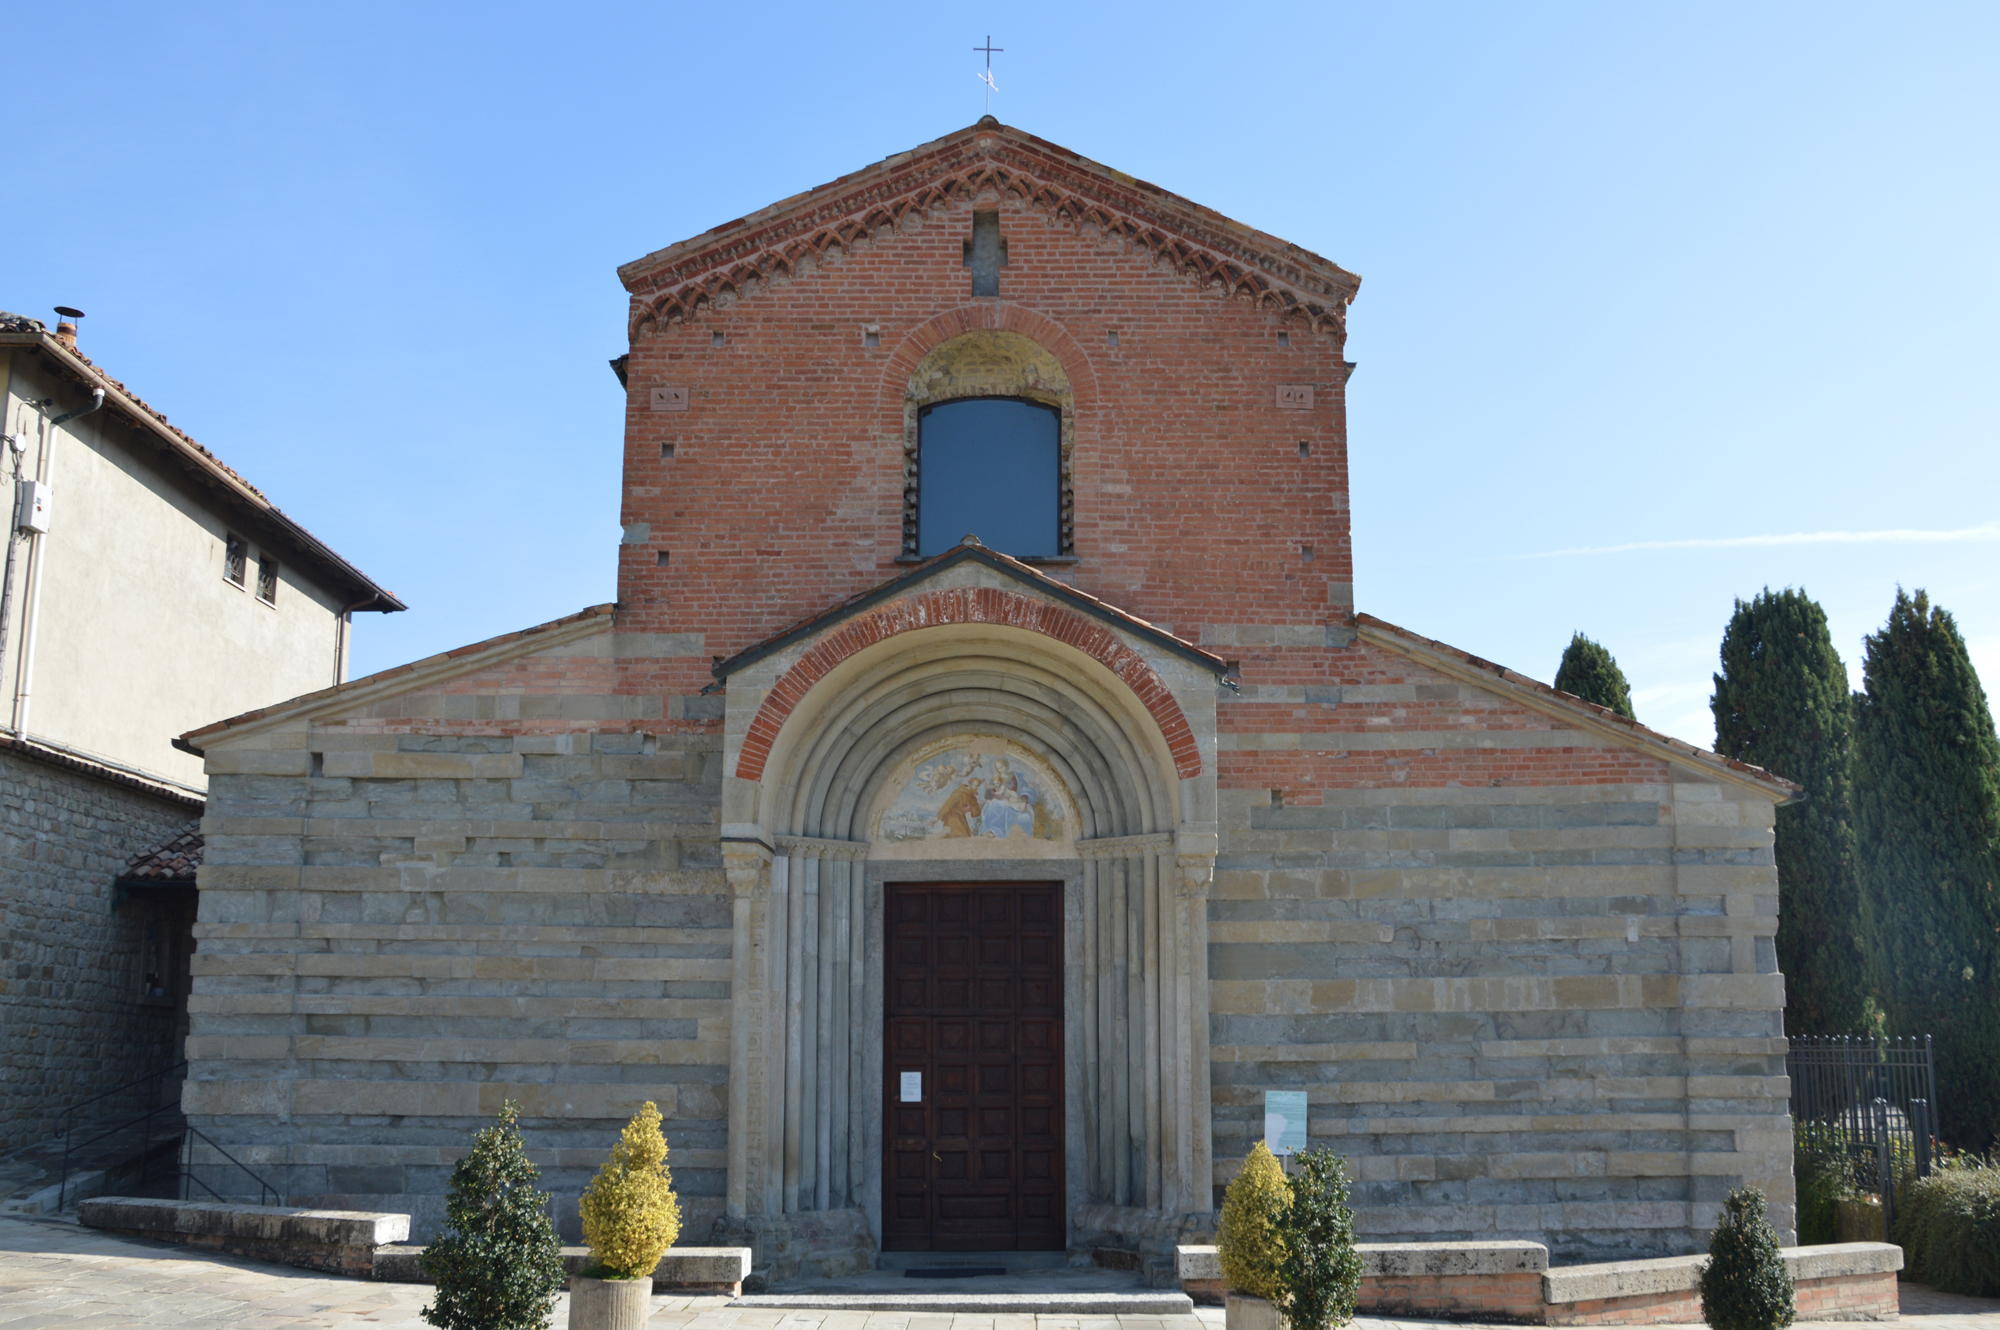 Chiesa di S. Germano o "dei Cappuccini" (a) (chiesa, ed annessi rustici) - Varzi (PV) 